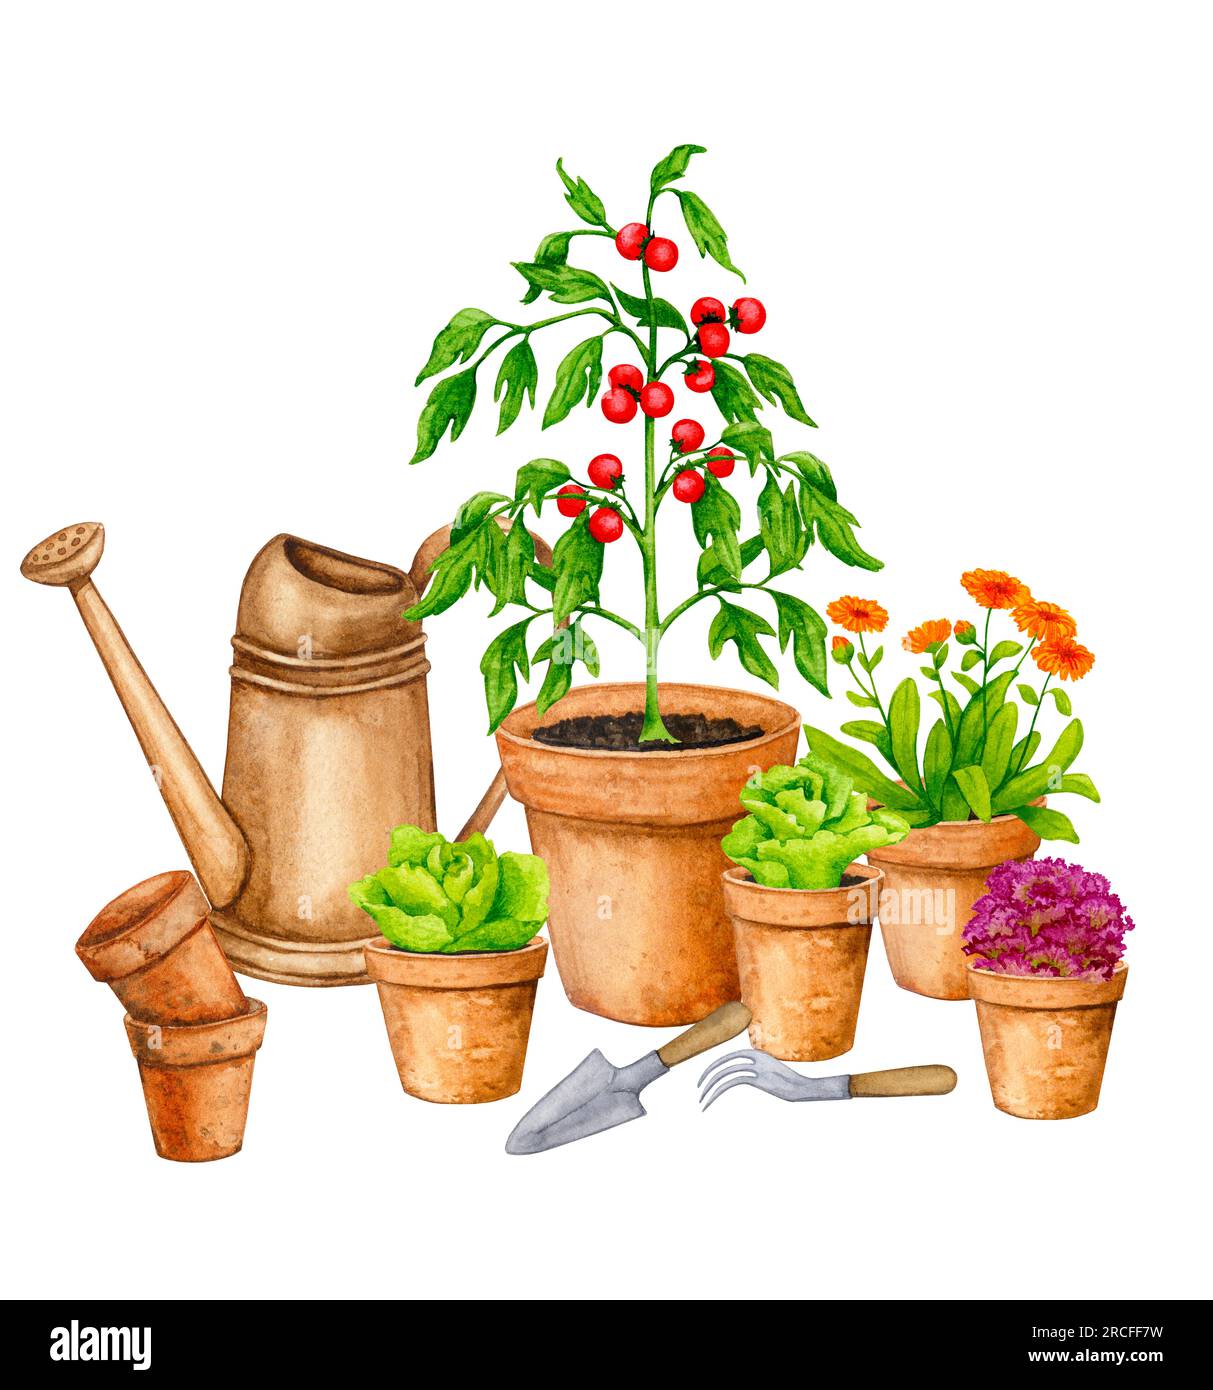 Verdure coltivate in vasi di argilla. Orto in contenitori. Composizione acquerello sul tema del giardinaggio, delle piantine primaverili, della coltivazione di ortaggi, Foto Stock